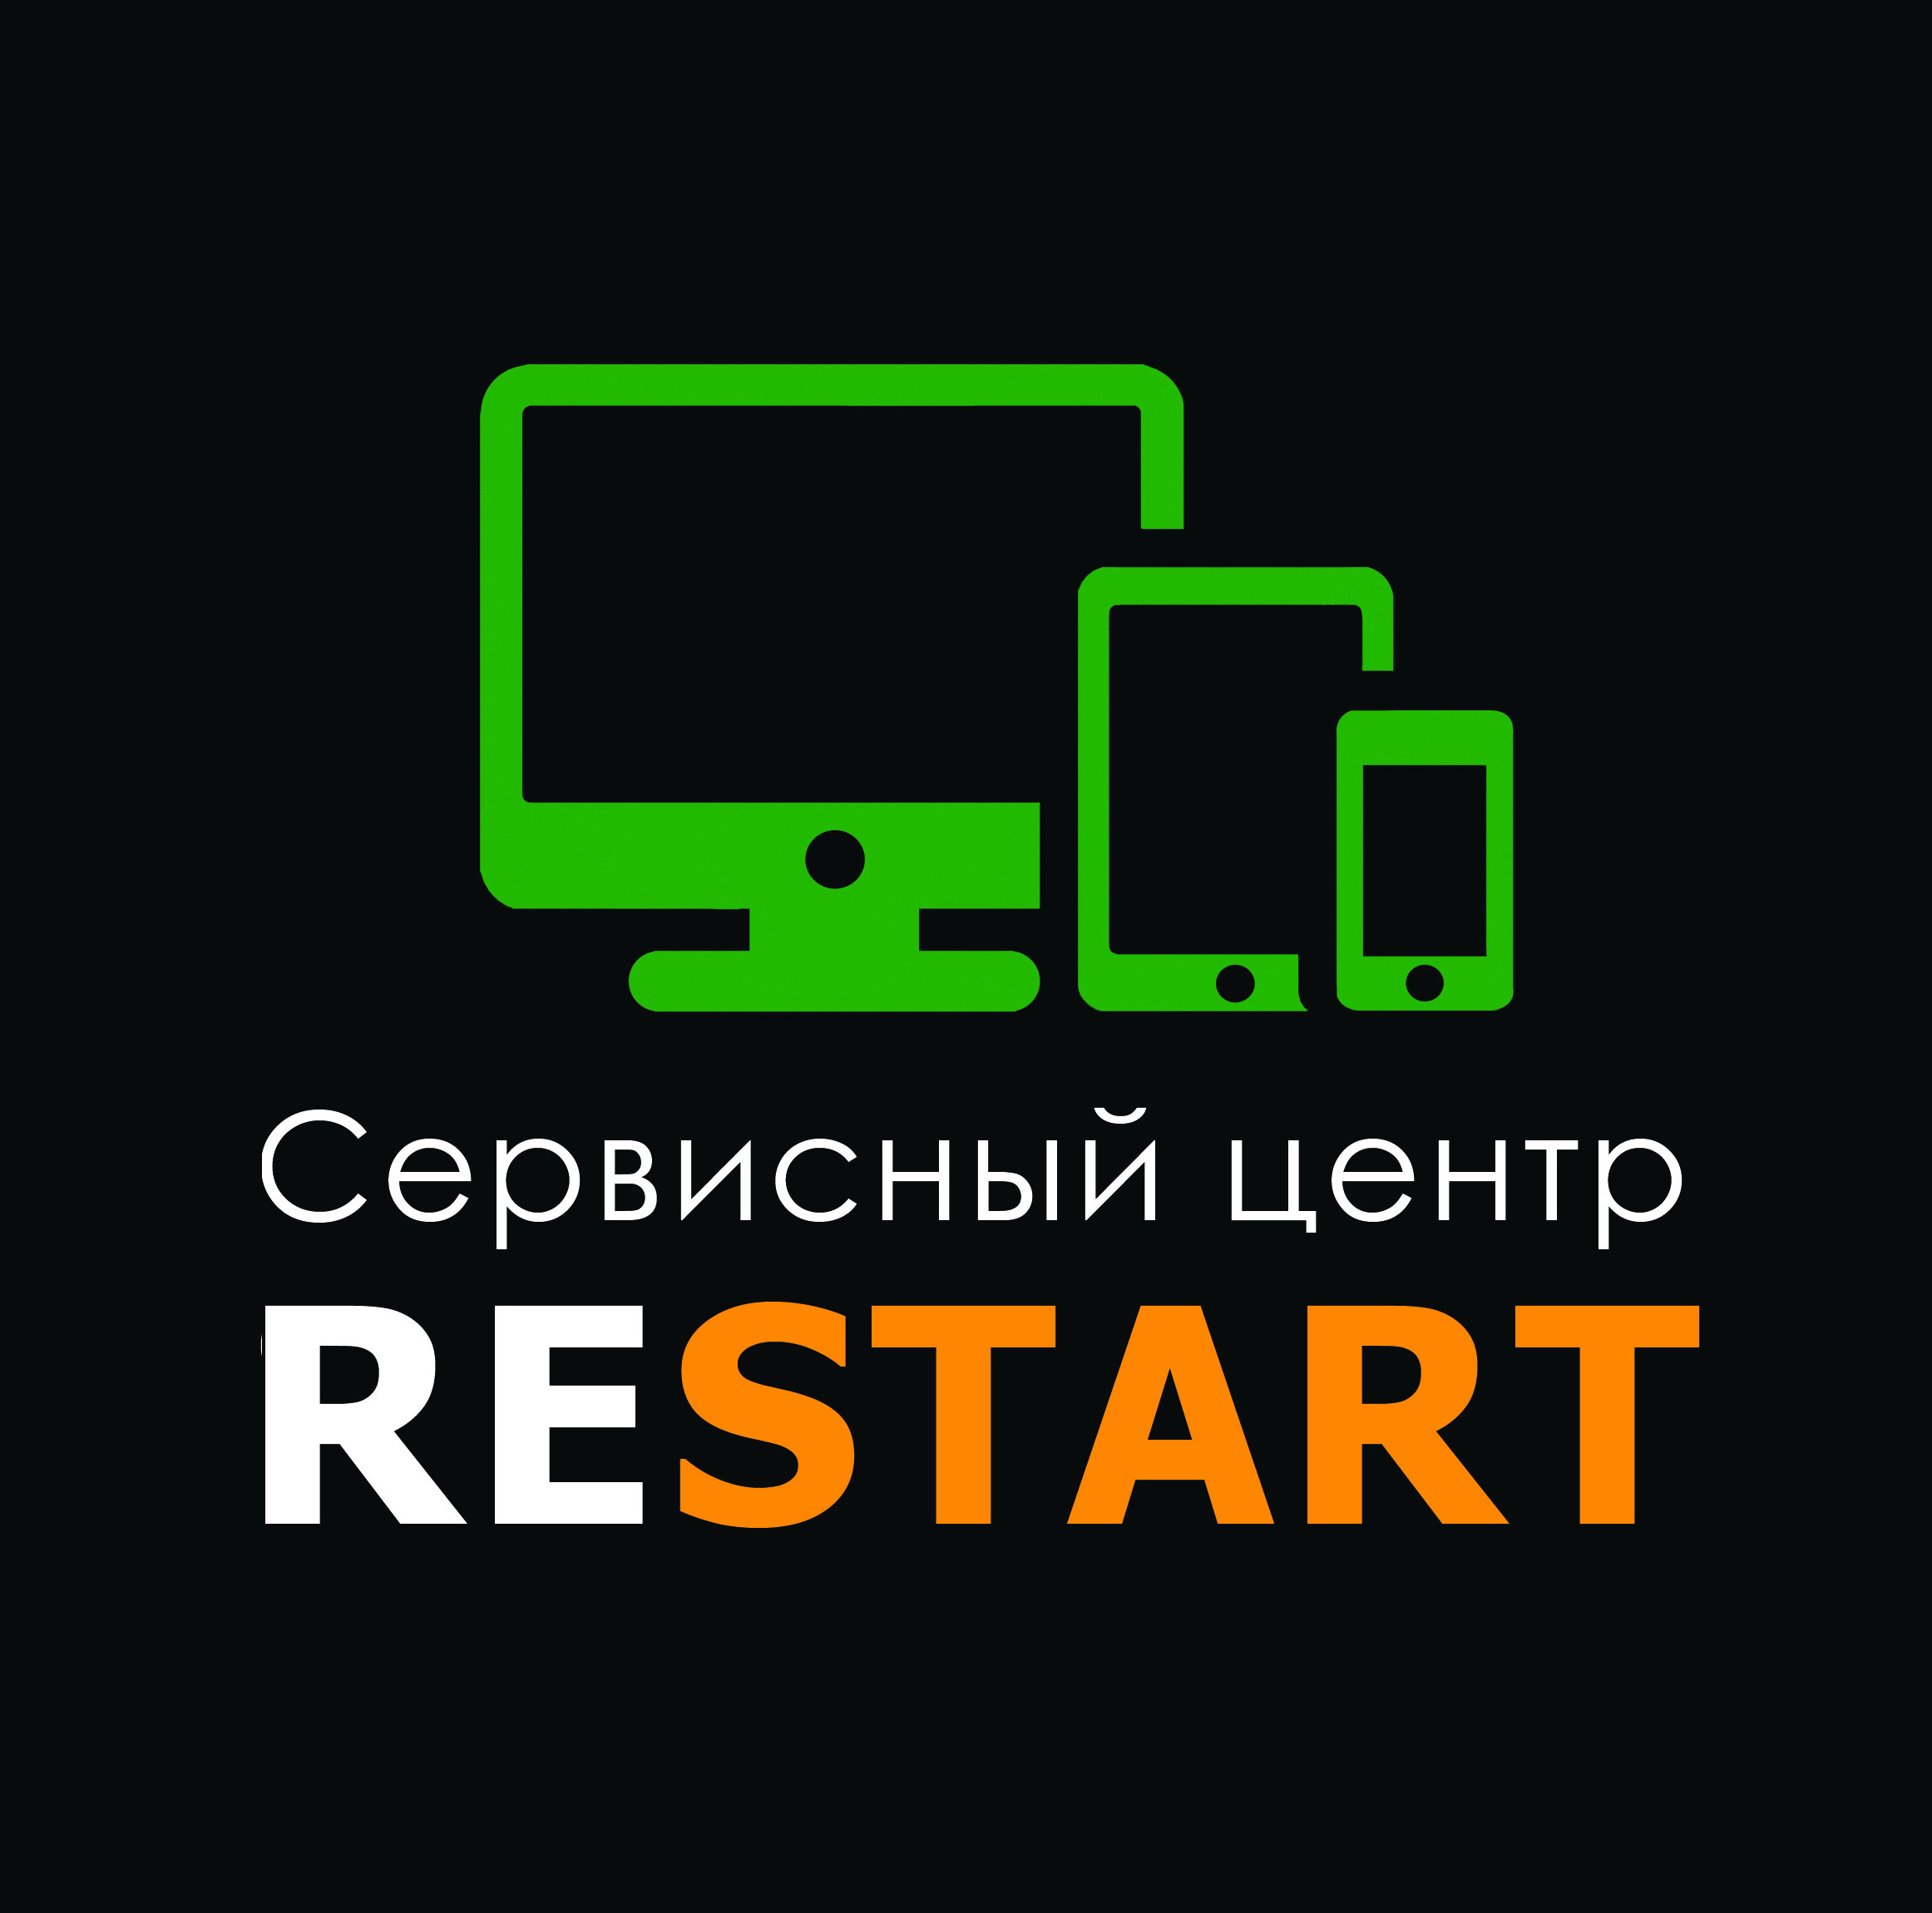 Restart encounter. Сервисный центр логотип. Ремонт компьютеров логотип. Логотип компьютерного сервиса. Название для компьютерного сервиса.